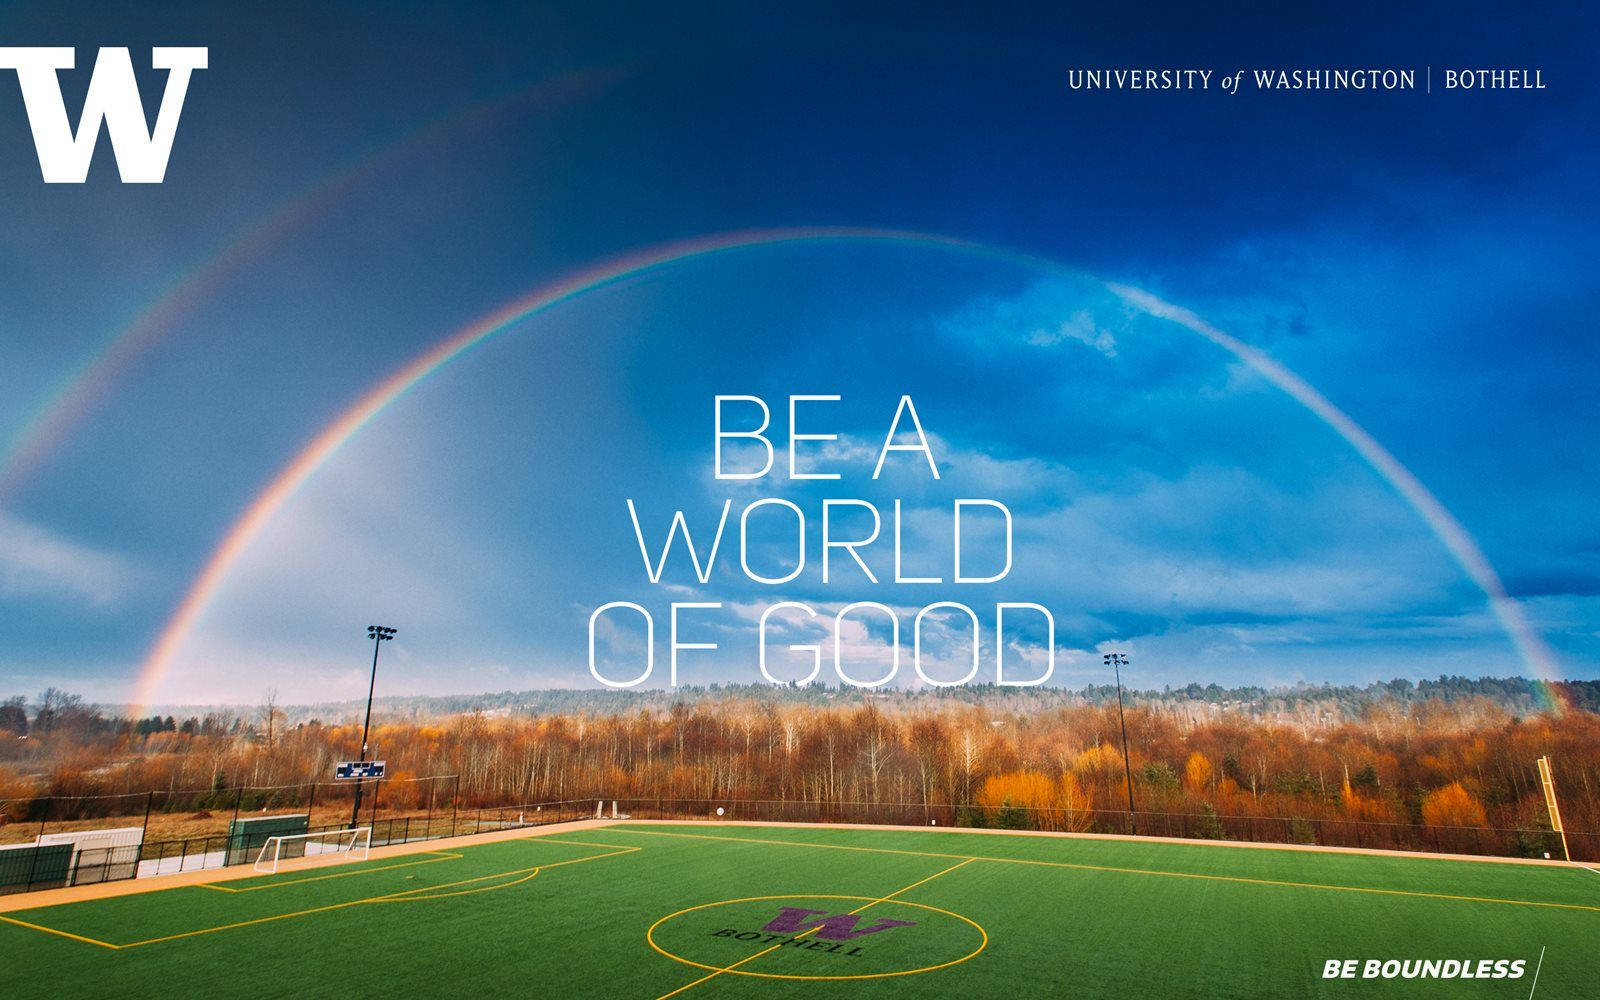 University Of Washington With Rainbow On Field Wallpaper